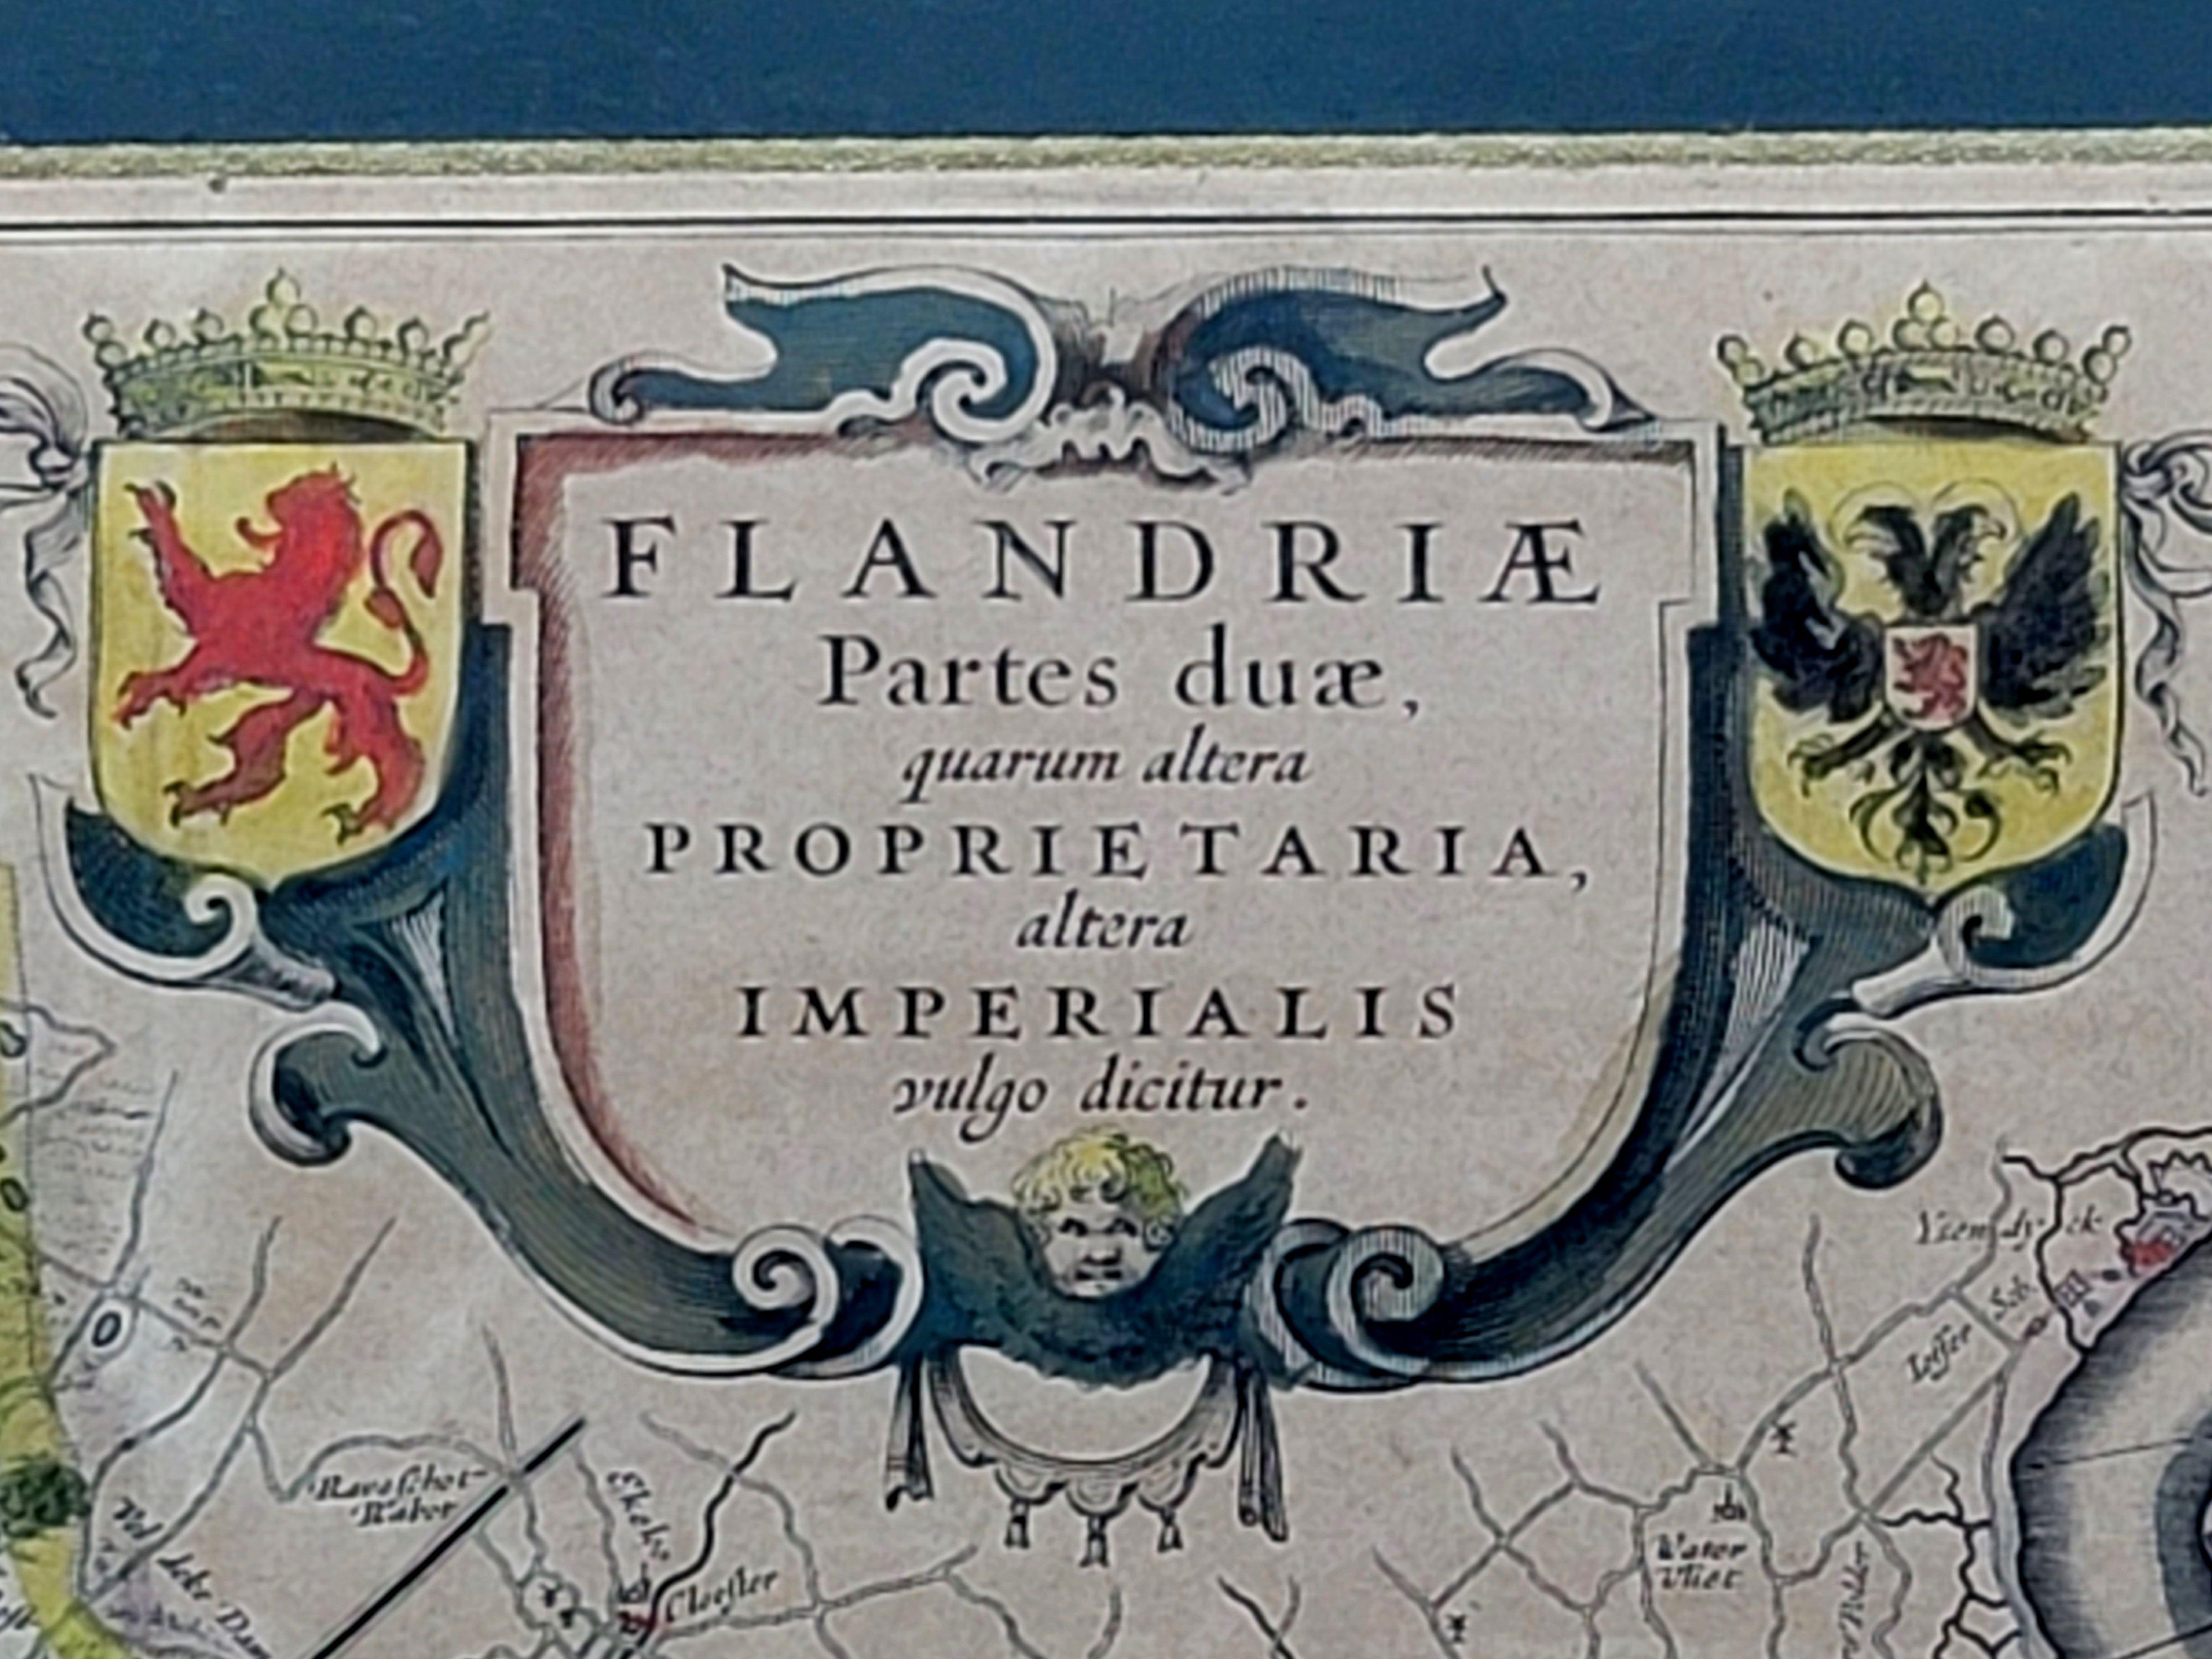 1640 Flandriae Partes Duae Quarum Altera Proprietaria, Ric0016 In Good Condition For Sale In Norton, MA